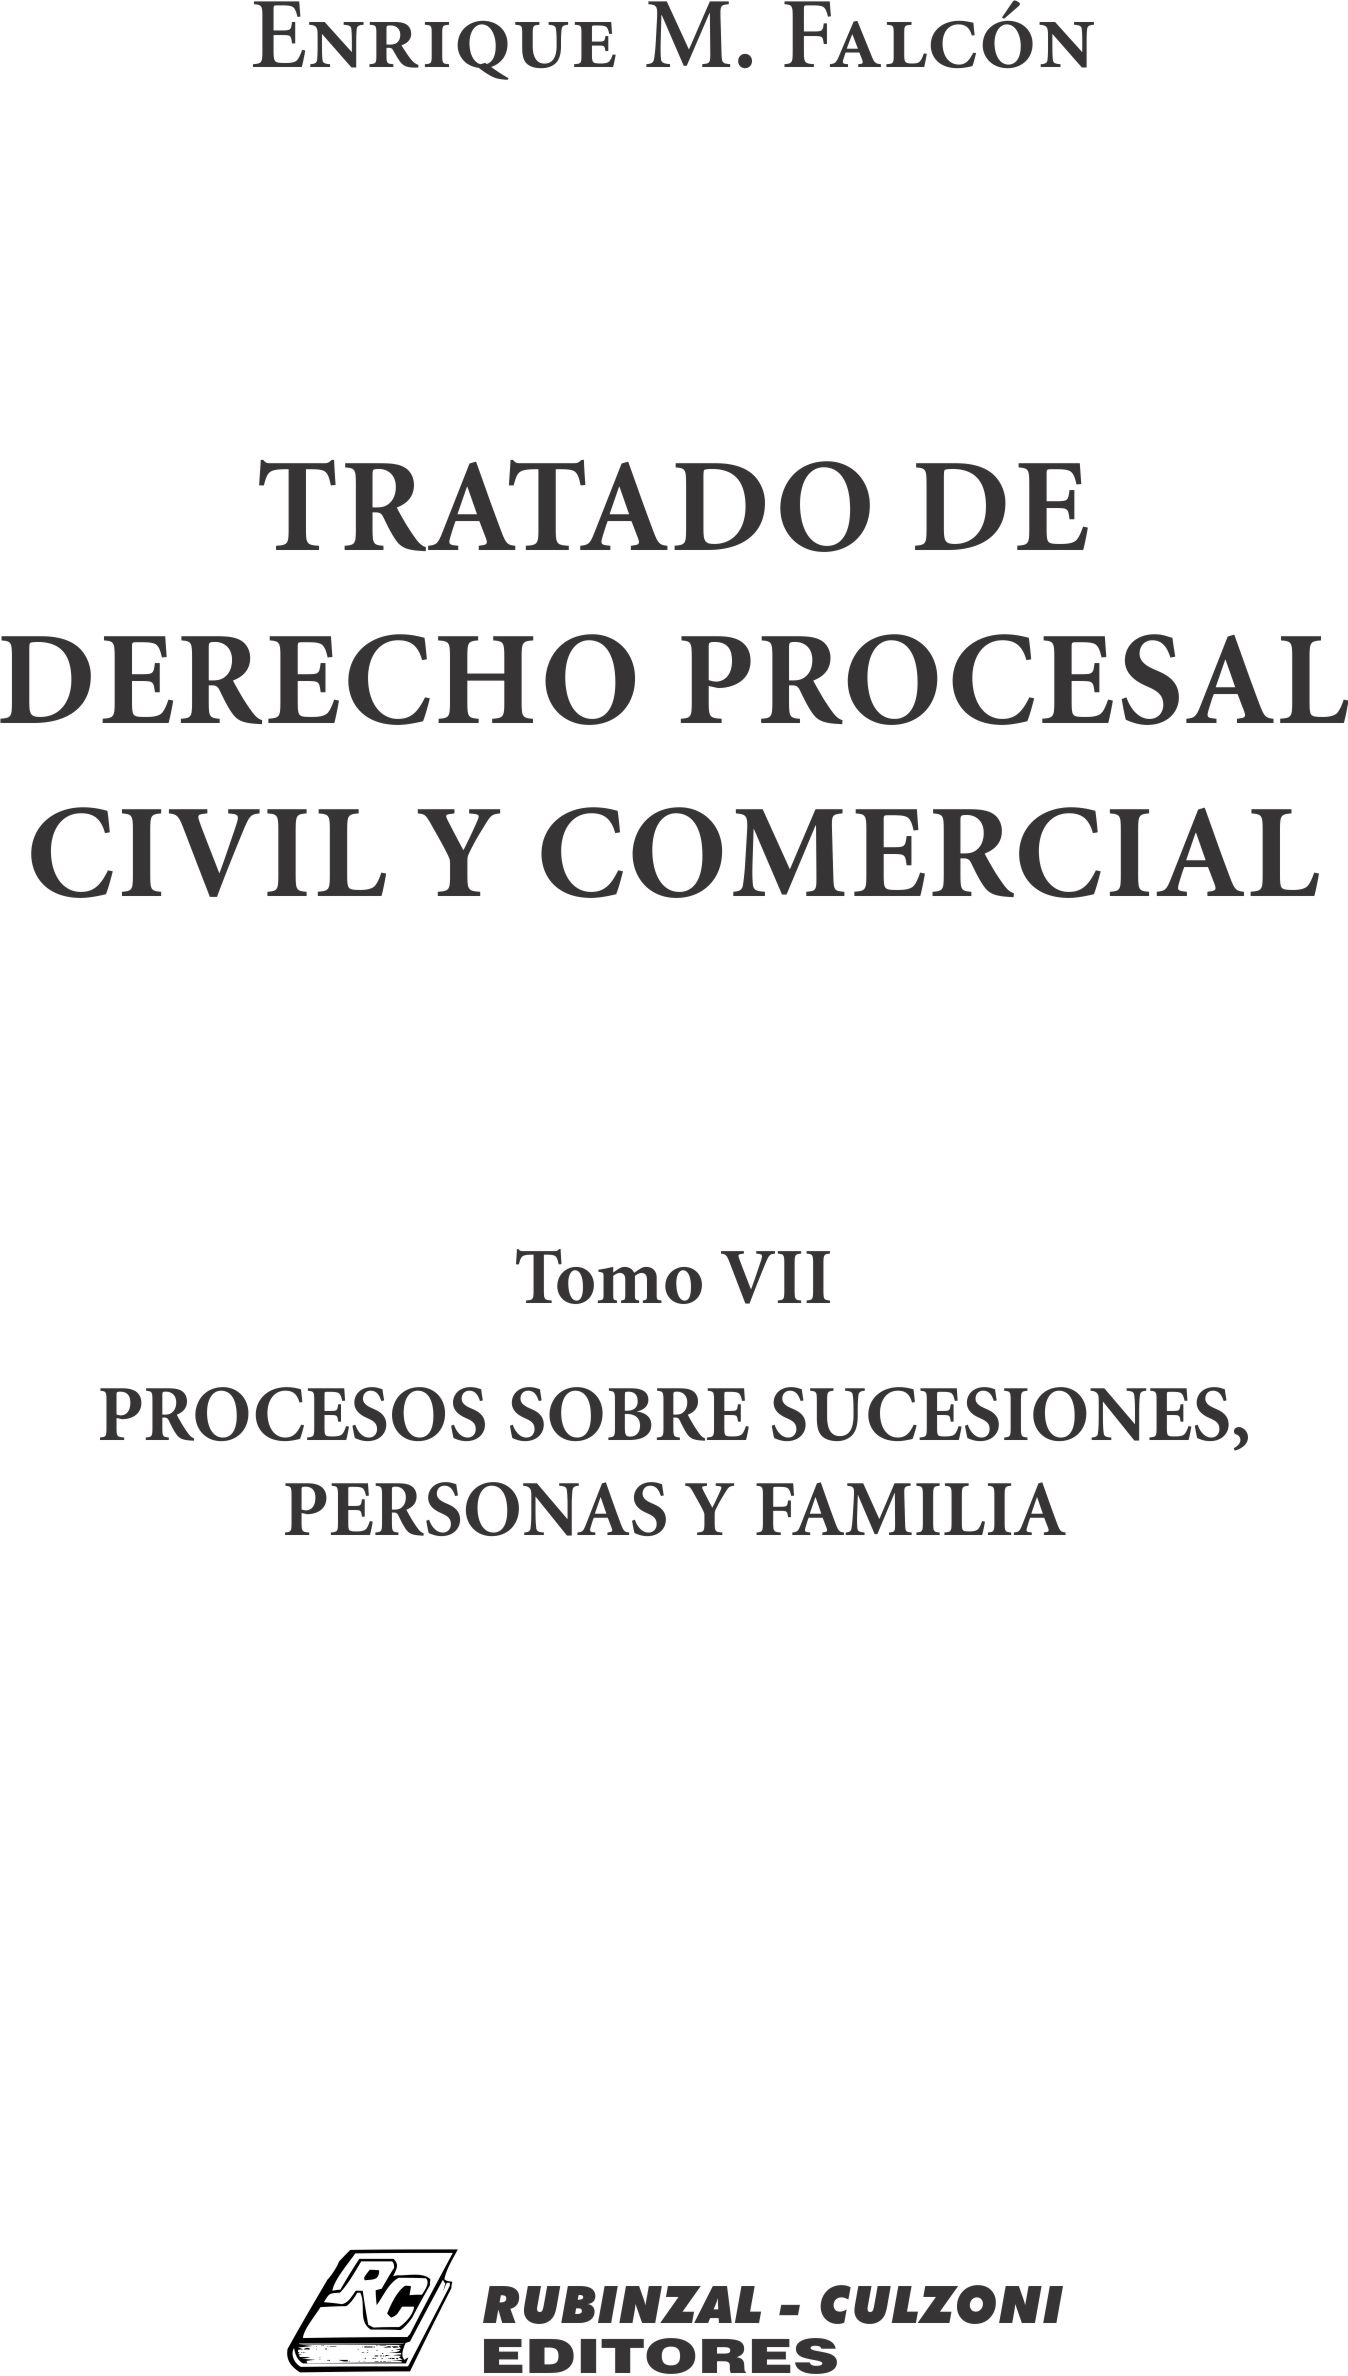 Tratado de Derecho Procesal Civil y Comercial. - Tomo VII. Procesos sobre sucesiones, personas y familia.